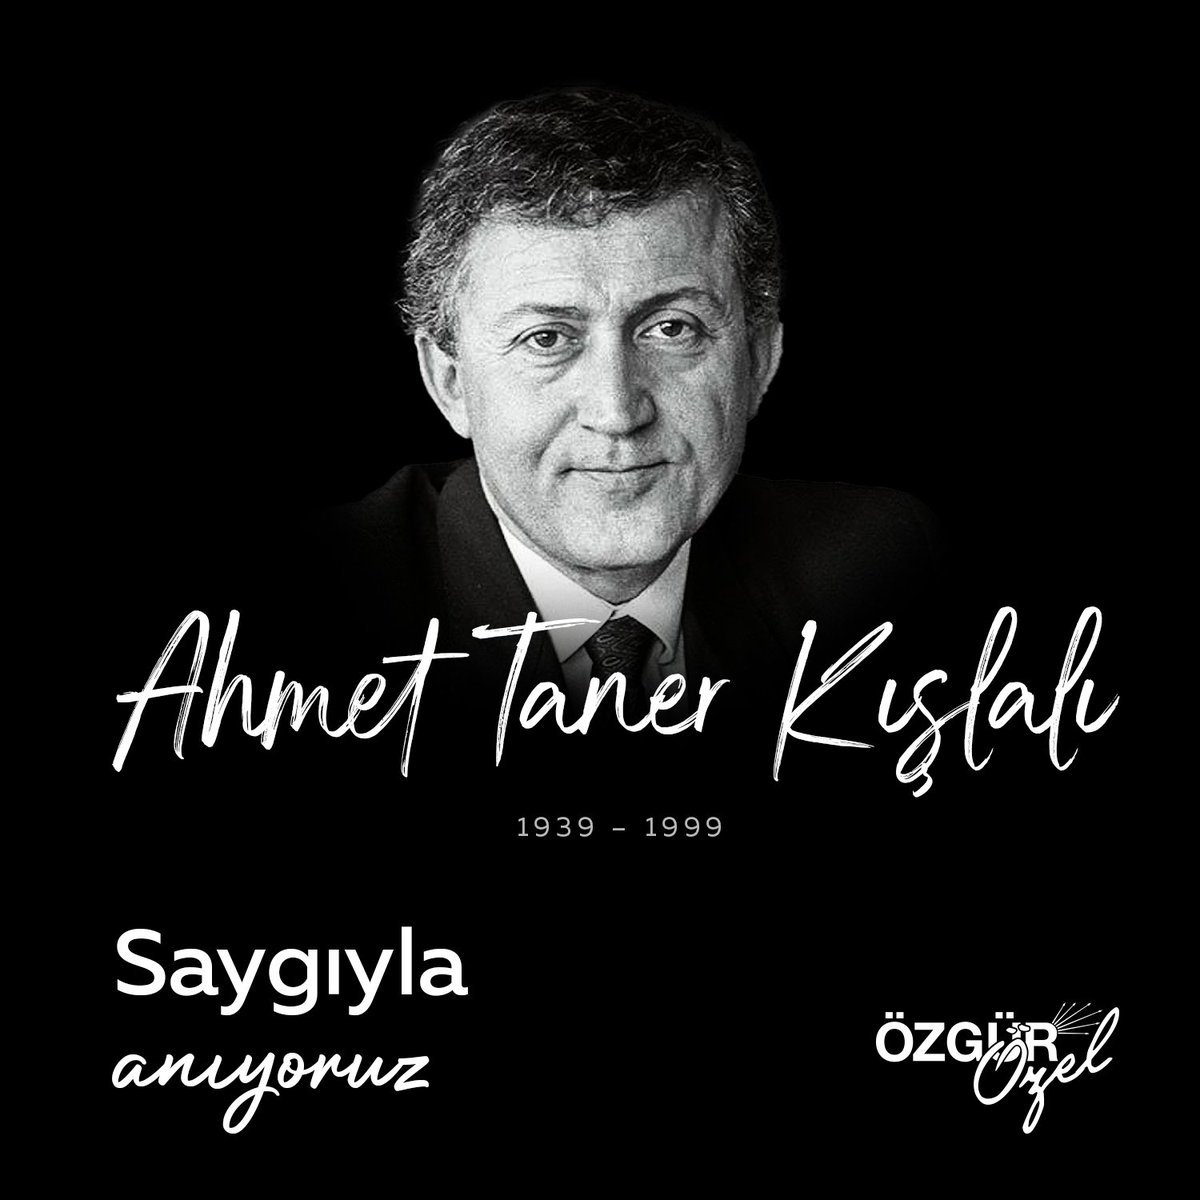 Kültür Bakanlığı görevinde de bulunmuş saygın akademisyen, bilim insanı Cumhuriyetin ve devrimlerinin yılmaz savunucusu #AhmetTanerKışlalı'yı hain bir suikastle aramızdan ayrılışının 24'üncü yılında saygıyla anıyorum.